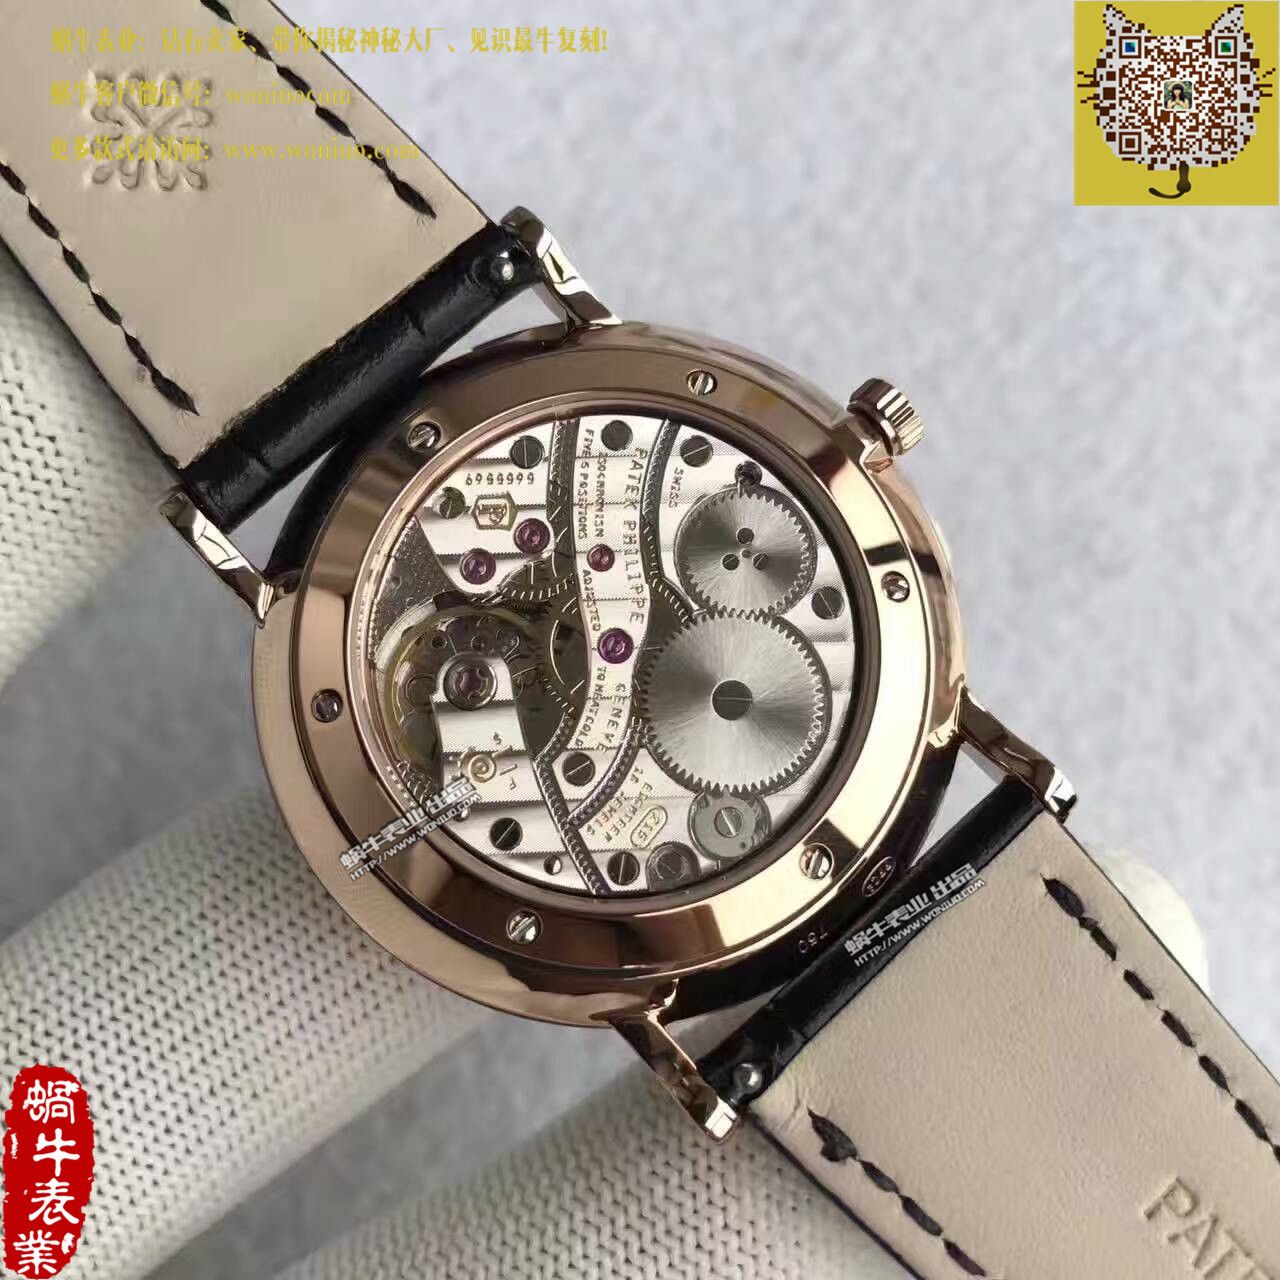 【台湾厂一比一超A高仿手表】百达翡丽古典表系列5119R-001腕表 / BD207